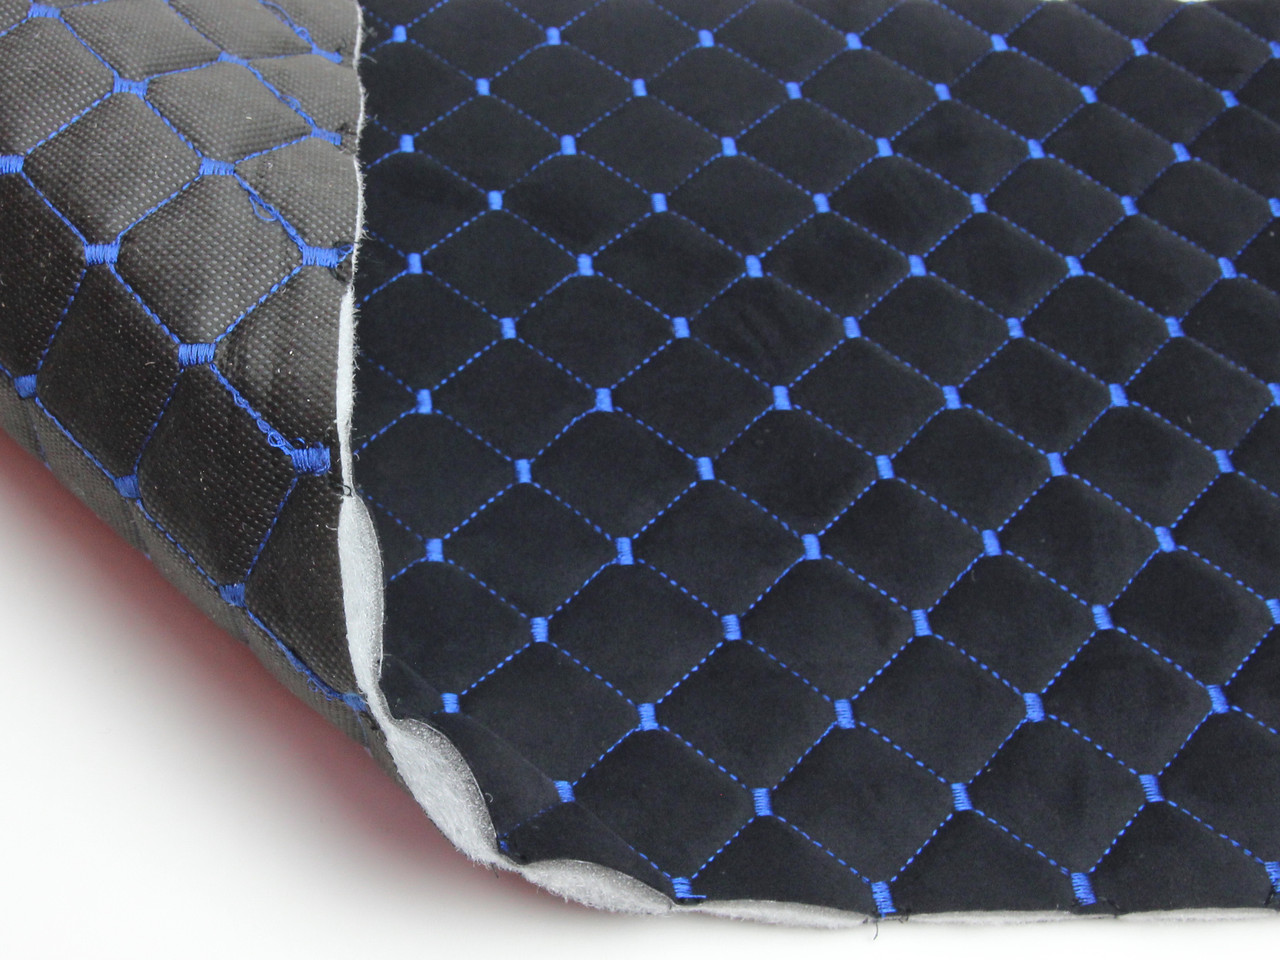 Велюр TRINITY стёганый черный «Ромб» (прошитый синей нитью) поролон, синтепон и флизелин, ширина 1,35м детальная фотка